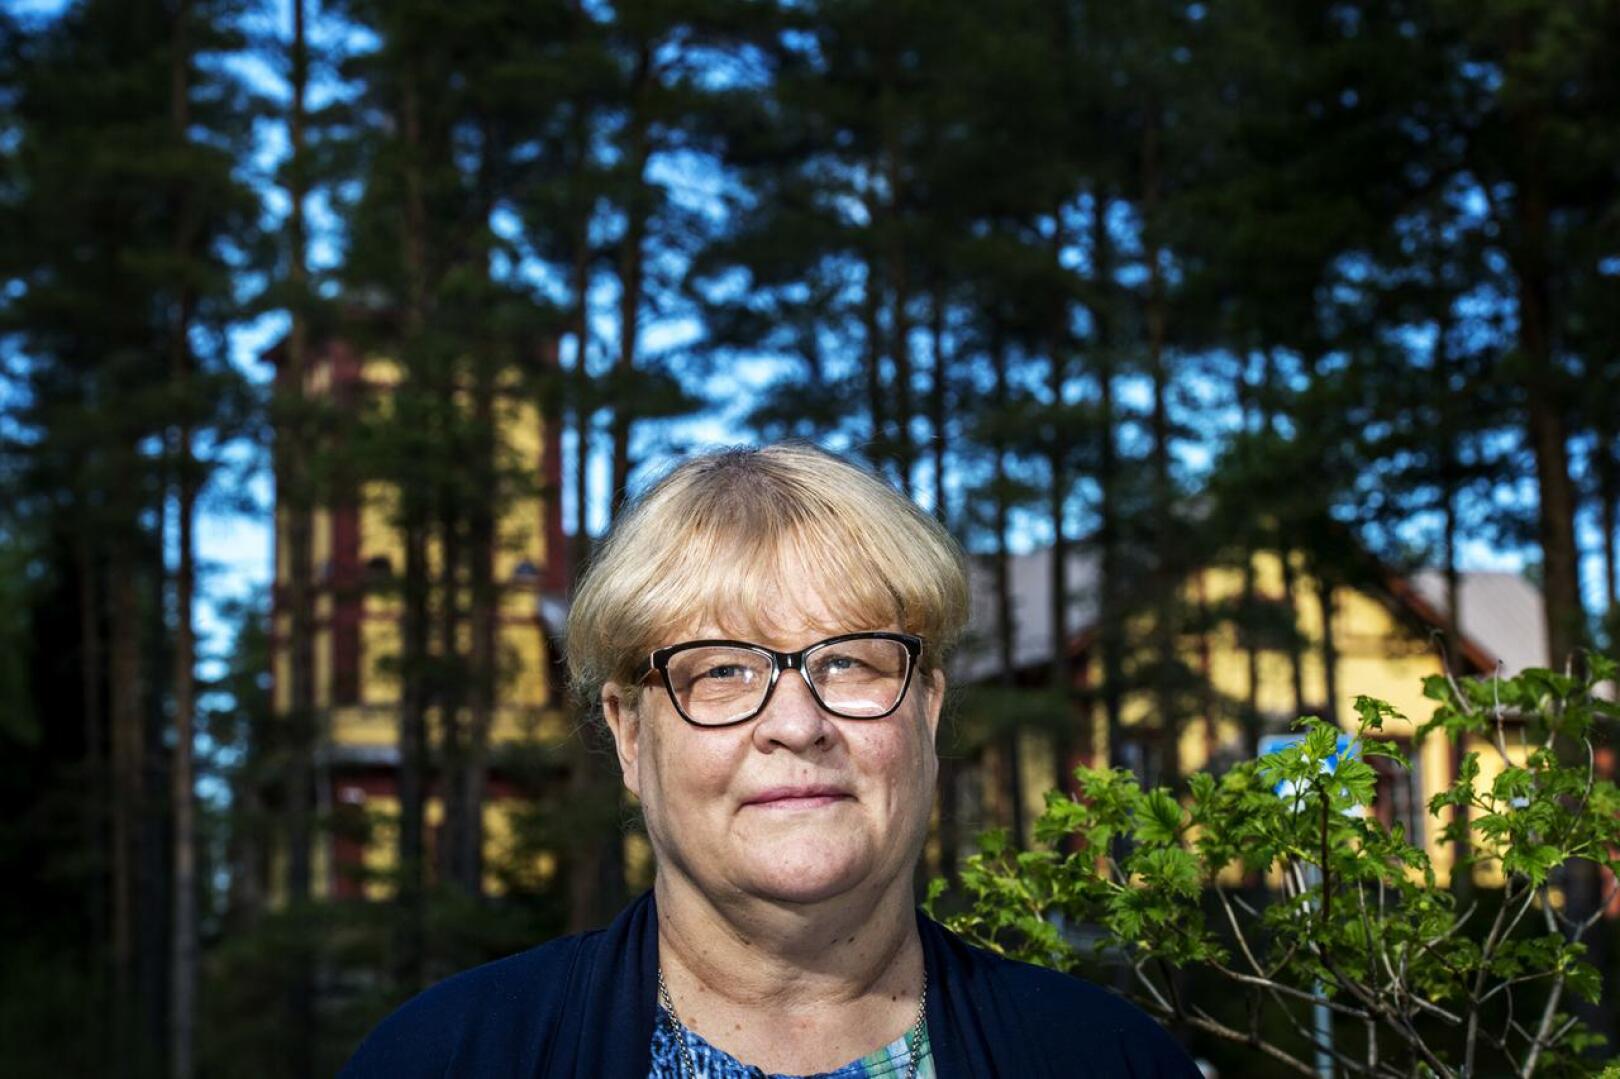 Anita Leppälä on työskennellyt Sievin seurakunnan palveluksessa 35 vuoden ajan. Hän siirtyy kirkkoherran tehtävästä kappalaiseksi heinäkuun alussa.